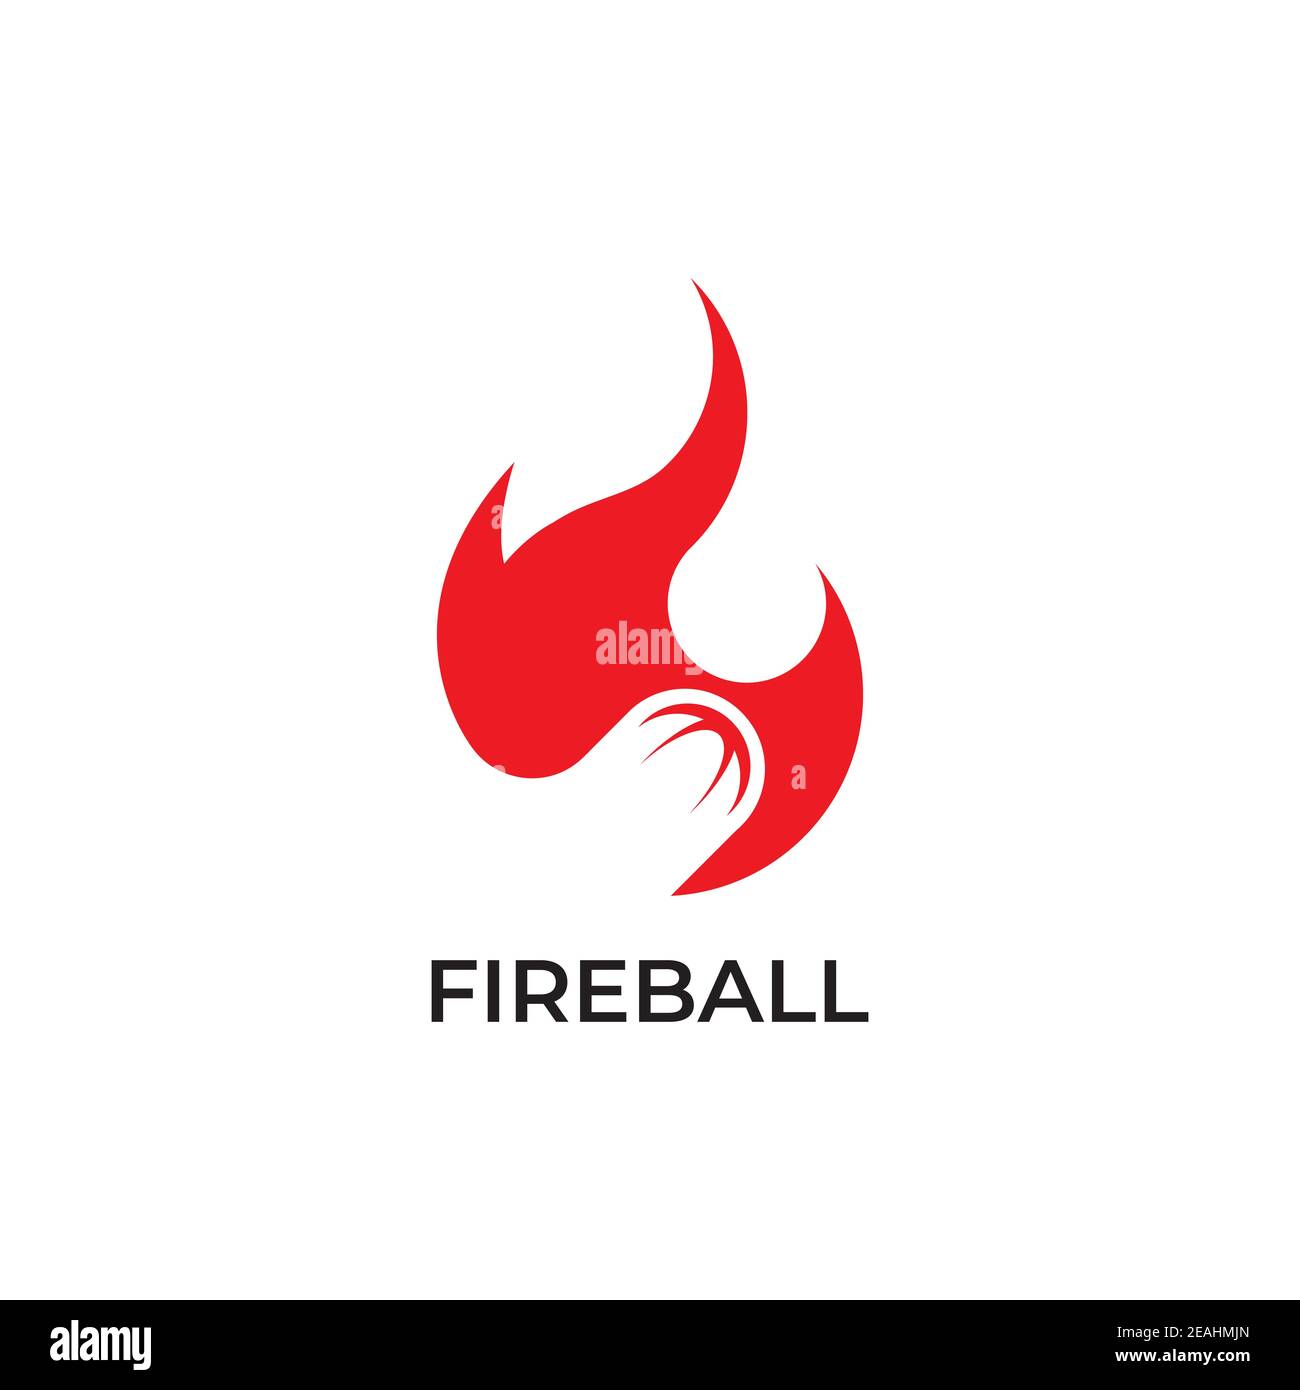 Fire ball logo design symbol vector template Stock Vector